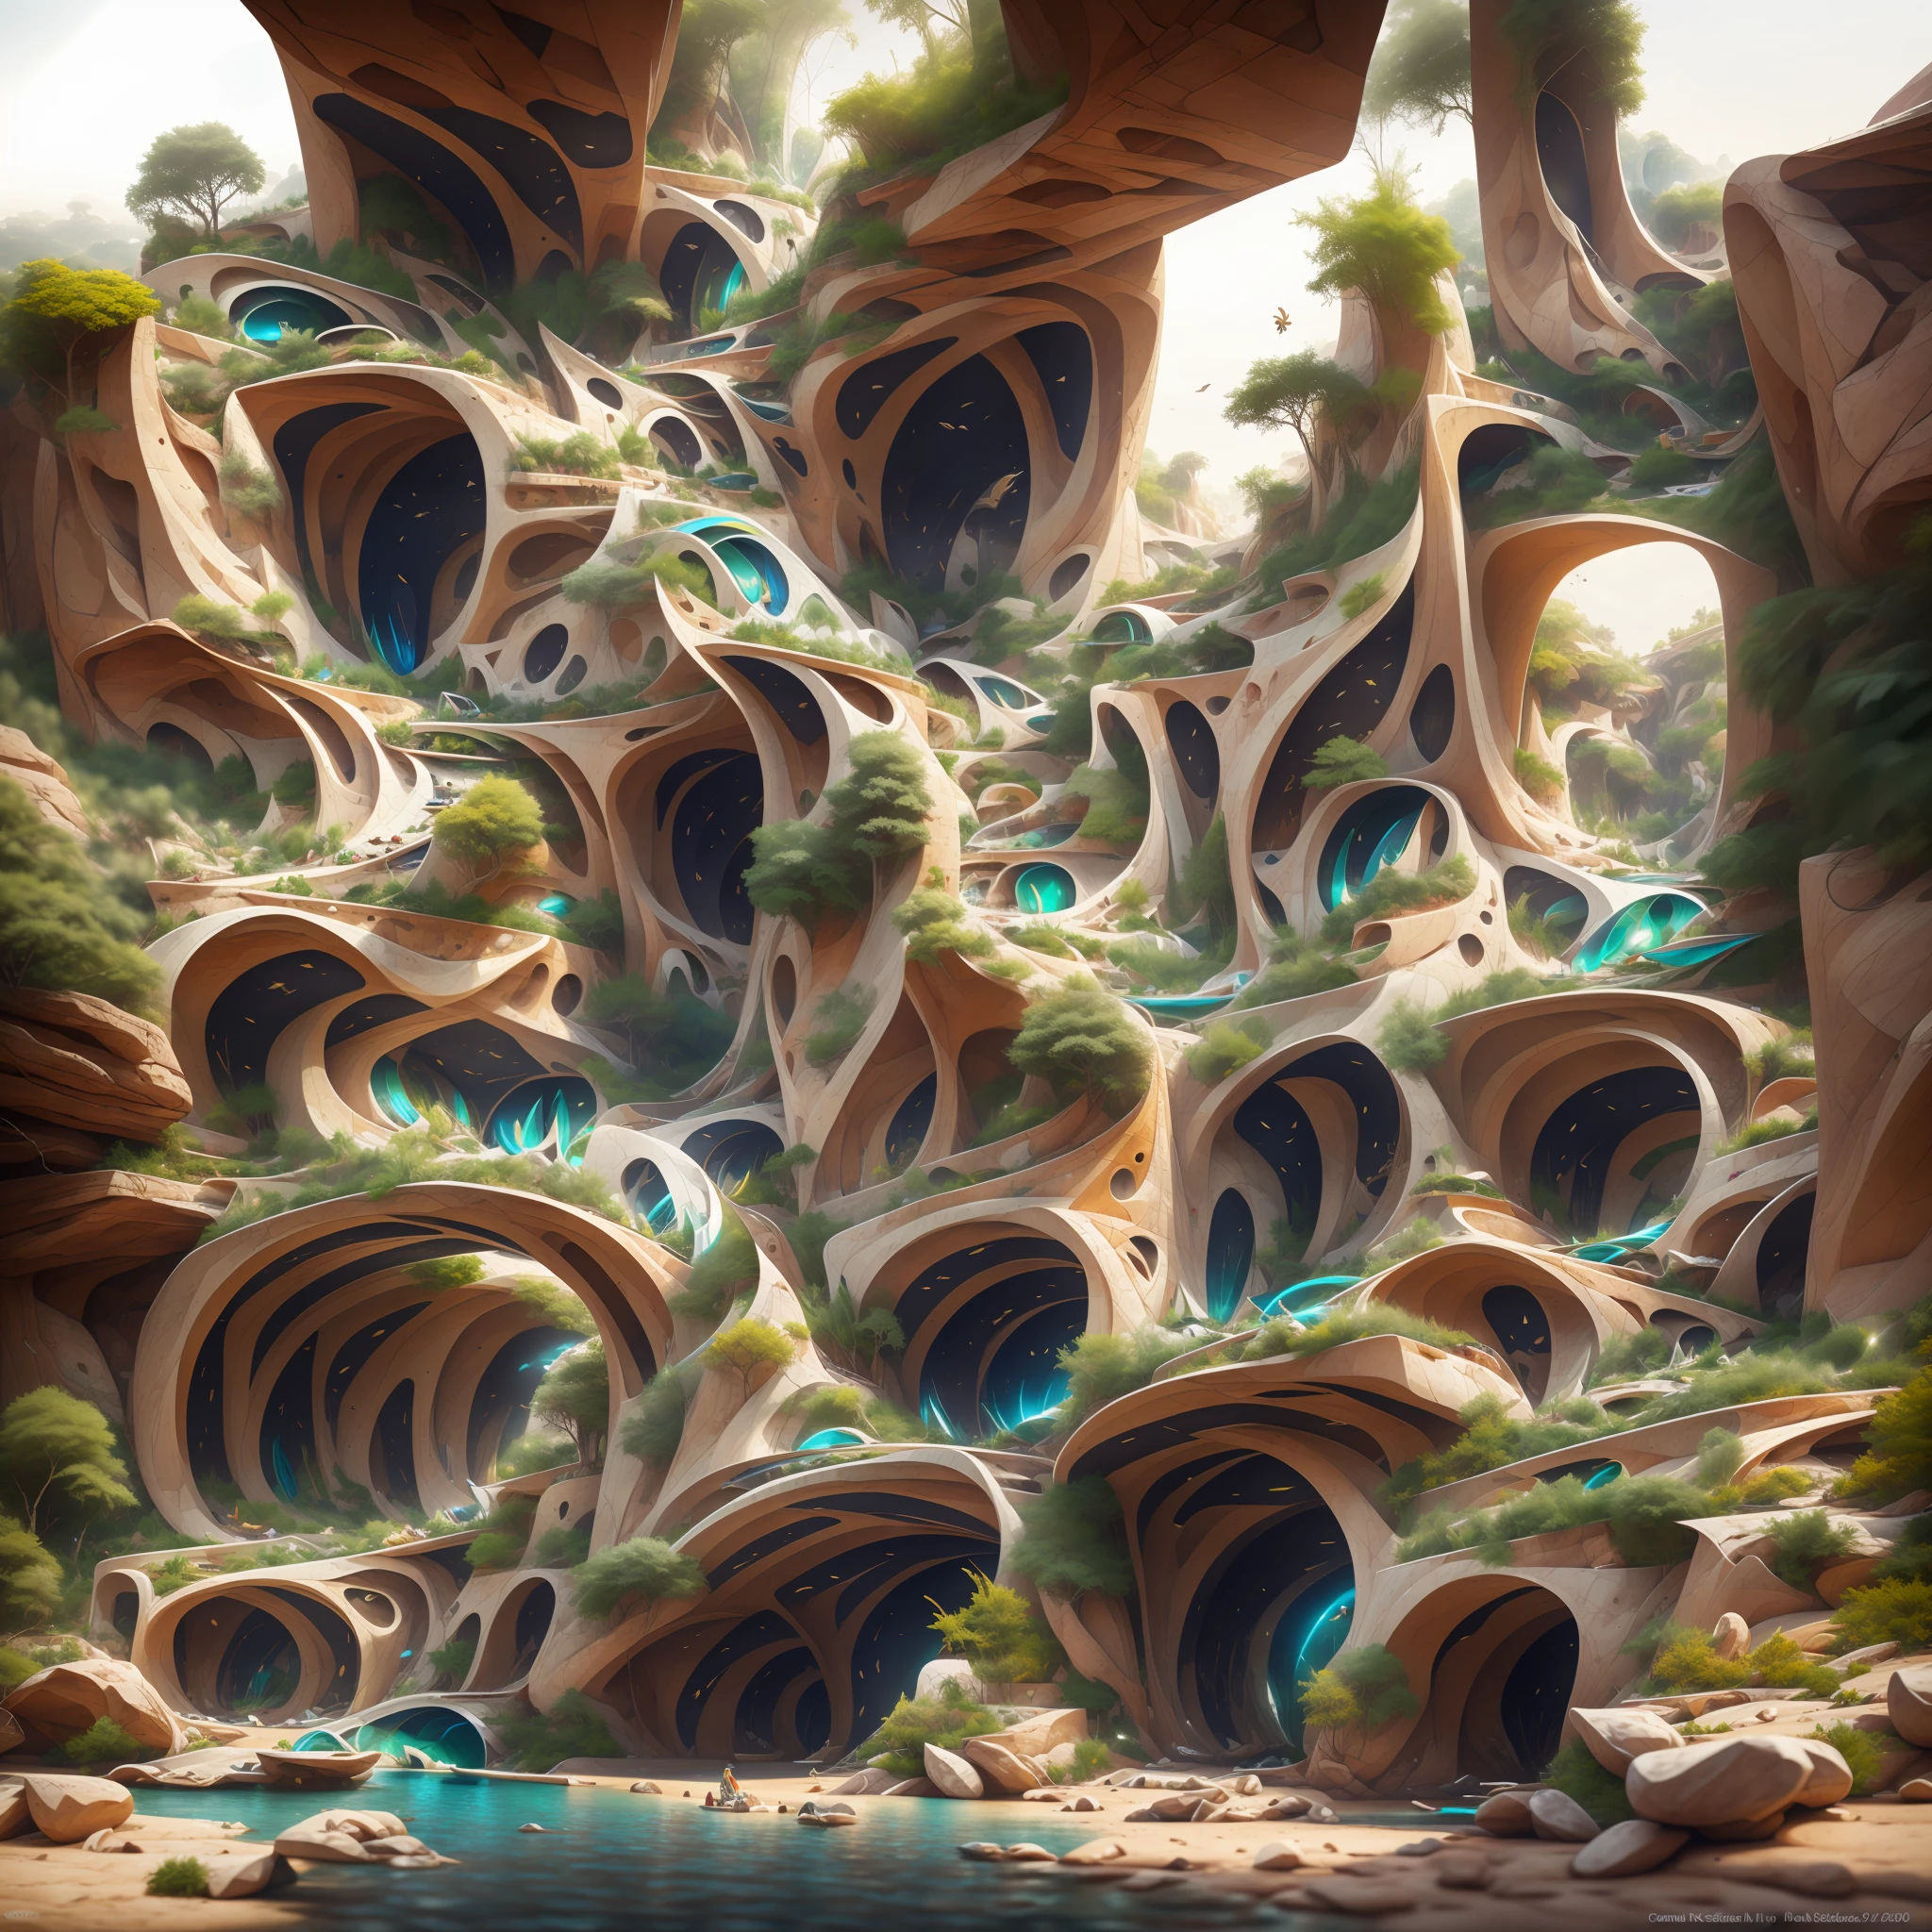 :an awesome sunny cheerful day environment concept art of Futuristic design of cave architecture interiors concept art on grand Canyon caves 自然 建築, 比例,詳細, 巨大な滝のある熱帯雨林のジャングルの崖で、自然と未来的な建築が融合した洞窟建築,夕暮れの光線, アリエス・モロスのスタイルで自然と現代建築が出会う, レム・コールハース,ダニエル・リベスキンド, ジャン・ヌーベル, パオロ・ソレーリ,ドライブラシスタイルの伊東豊雄とフィリップ・ジョンソン ,キアロスクーロ村,崖沿いの住宅街, 混合開発,自然 建築,明るい色,高層建築の階段, バルコニー, ガラス張りのファサードがいっぱい,岩から彫られた, 傑作, 比例, 詳細, アートステーションでトレンド, 美しい照明, 現実的, 複雑な